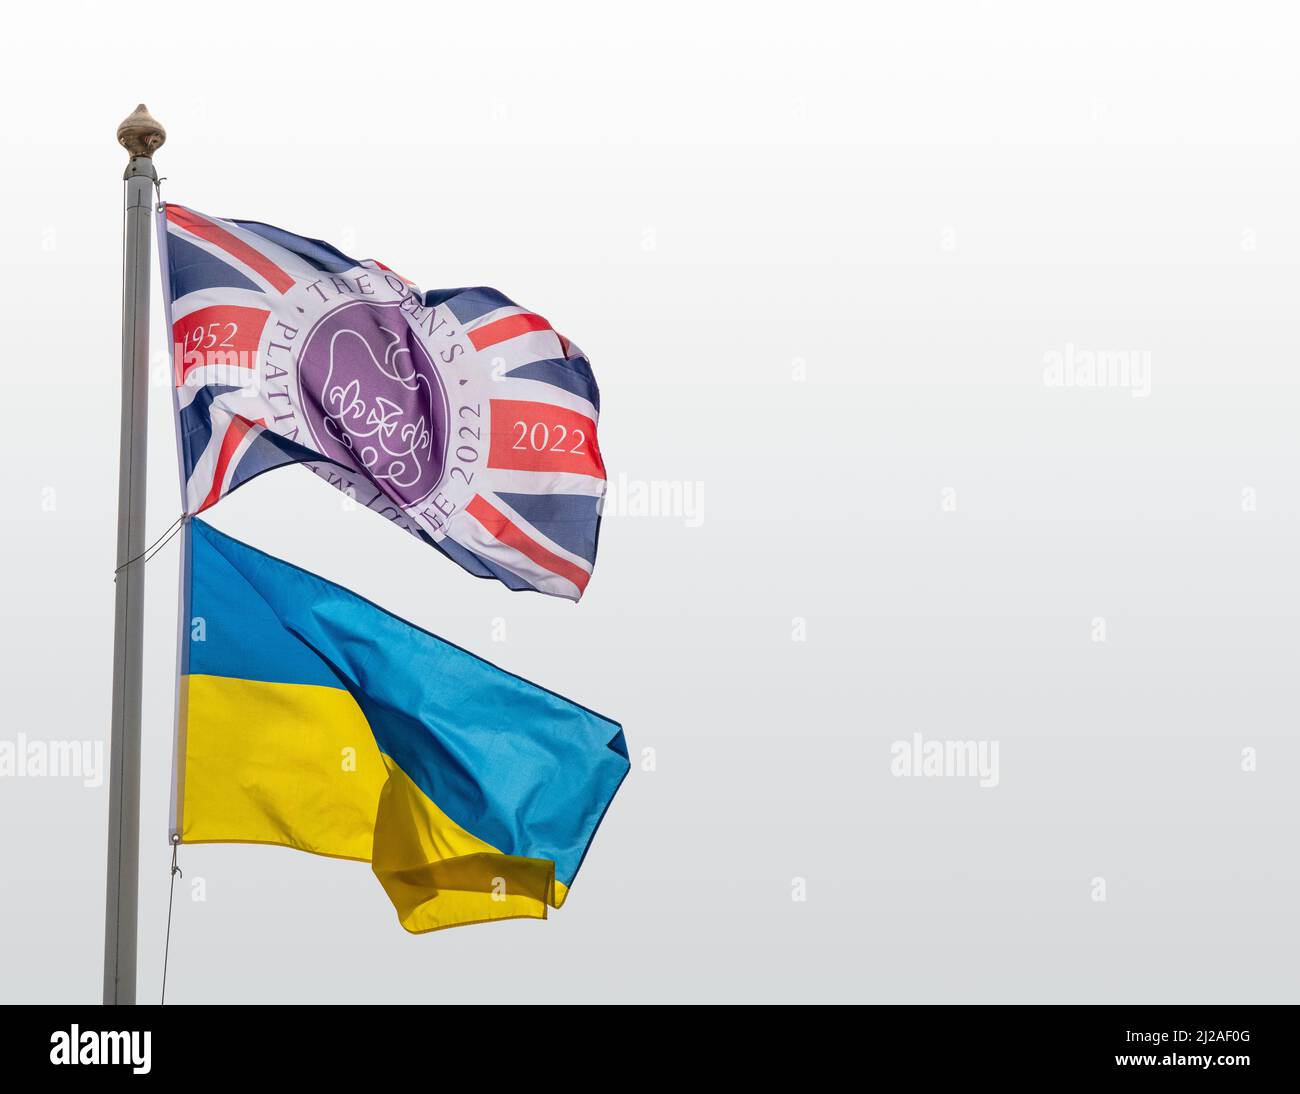 La bandiera Platinum Jubilee Union Jack vola su un palo insieme alla bandiera bicolore della Repubblica popolare Ucraina con cielo chiaro chiaro chiaro alle spalle Foto Stock